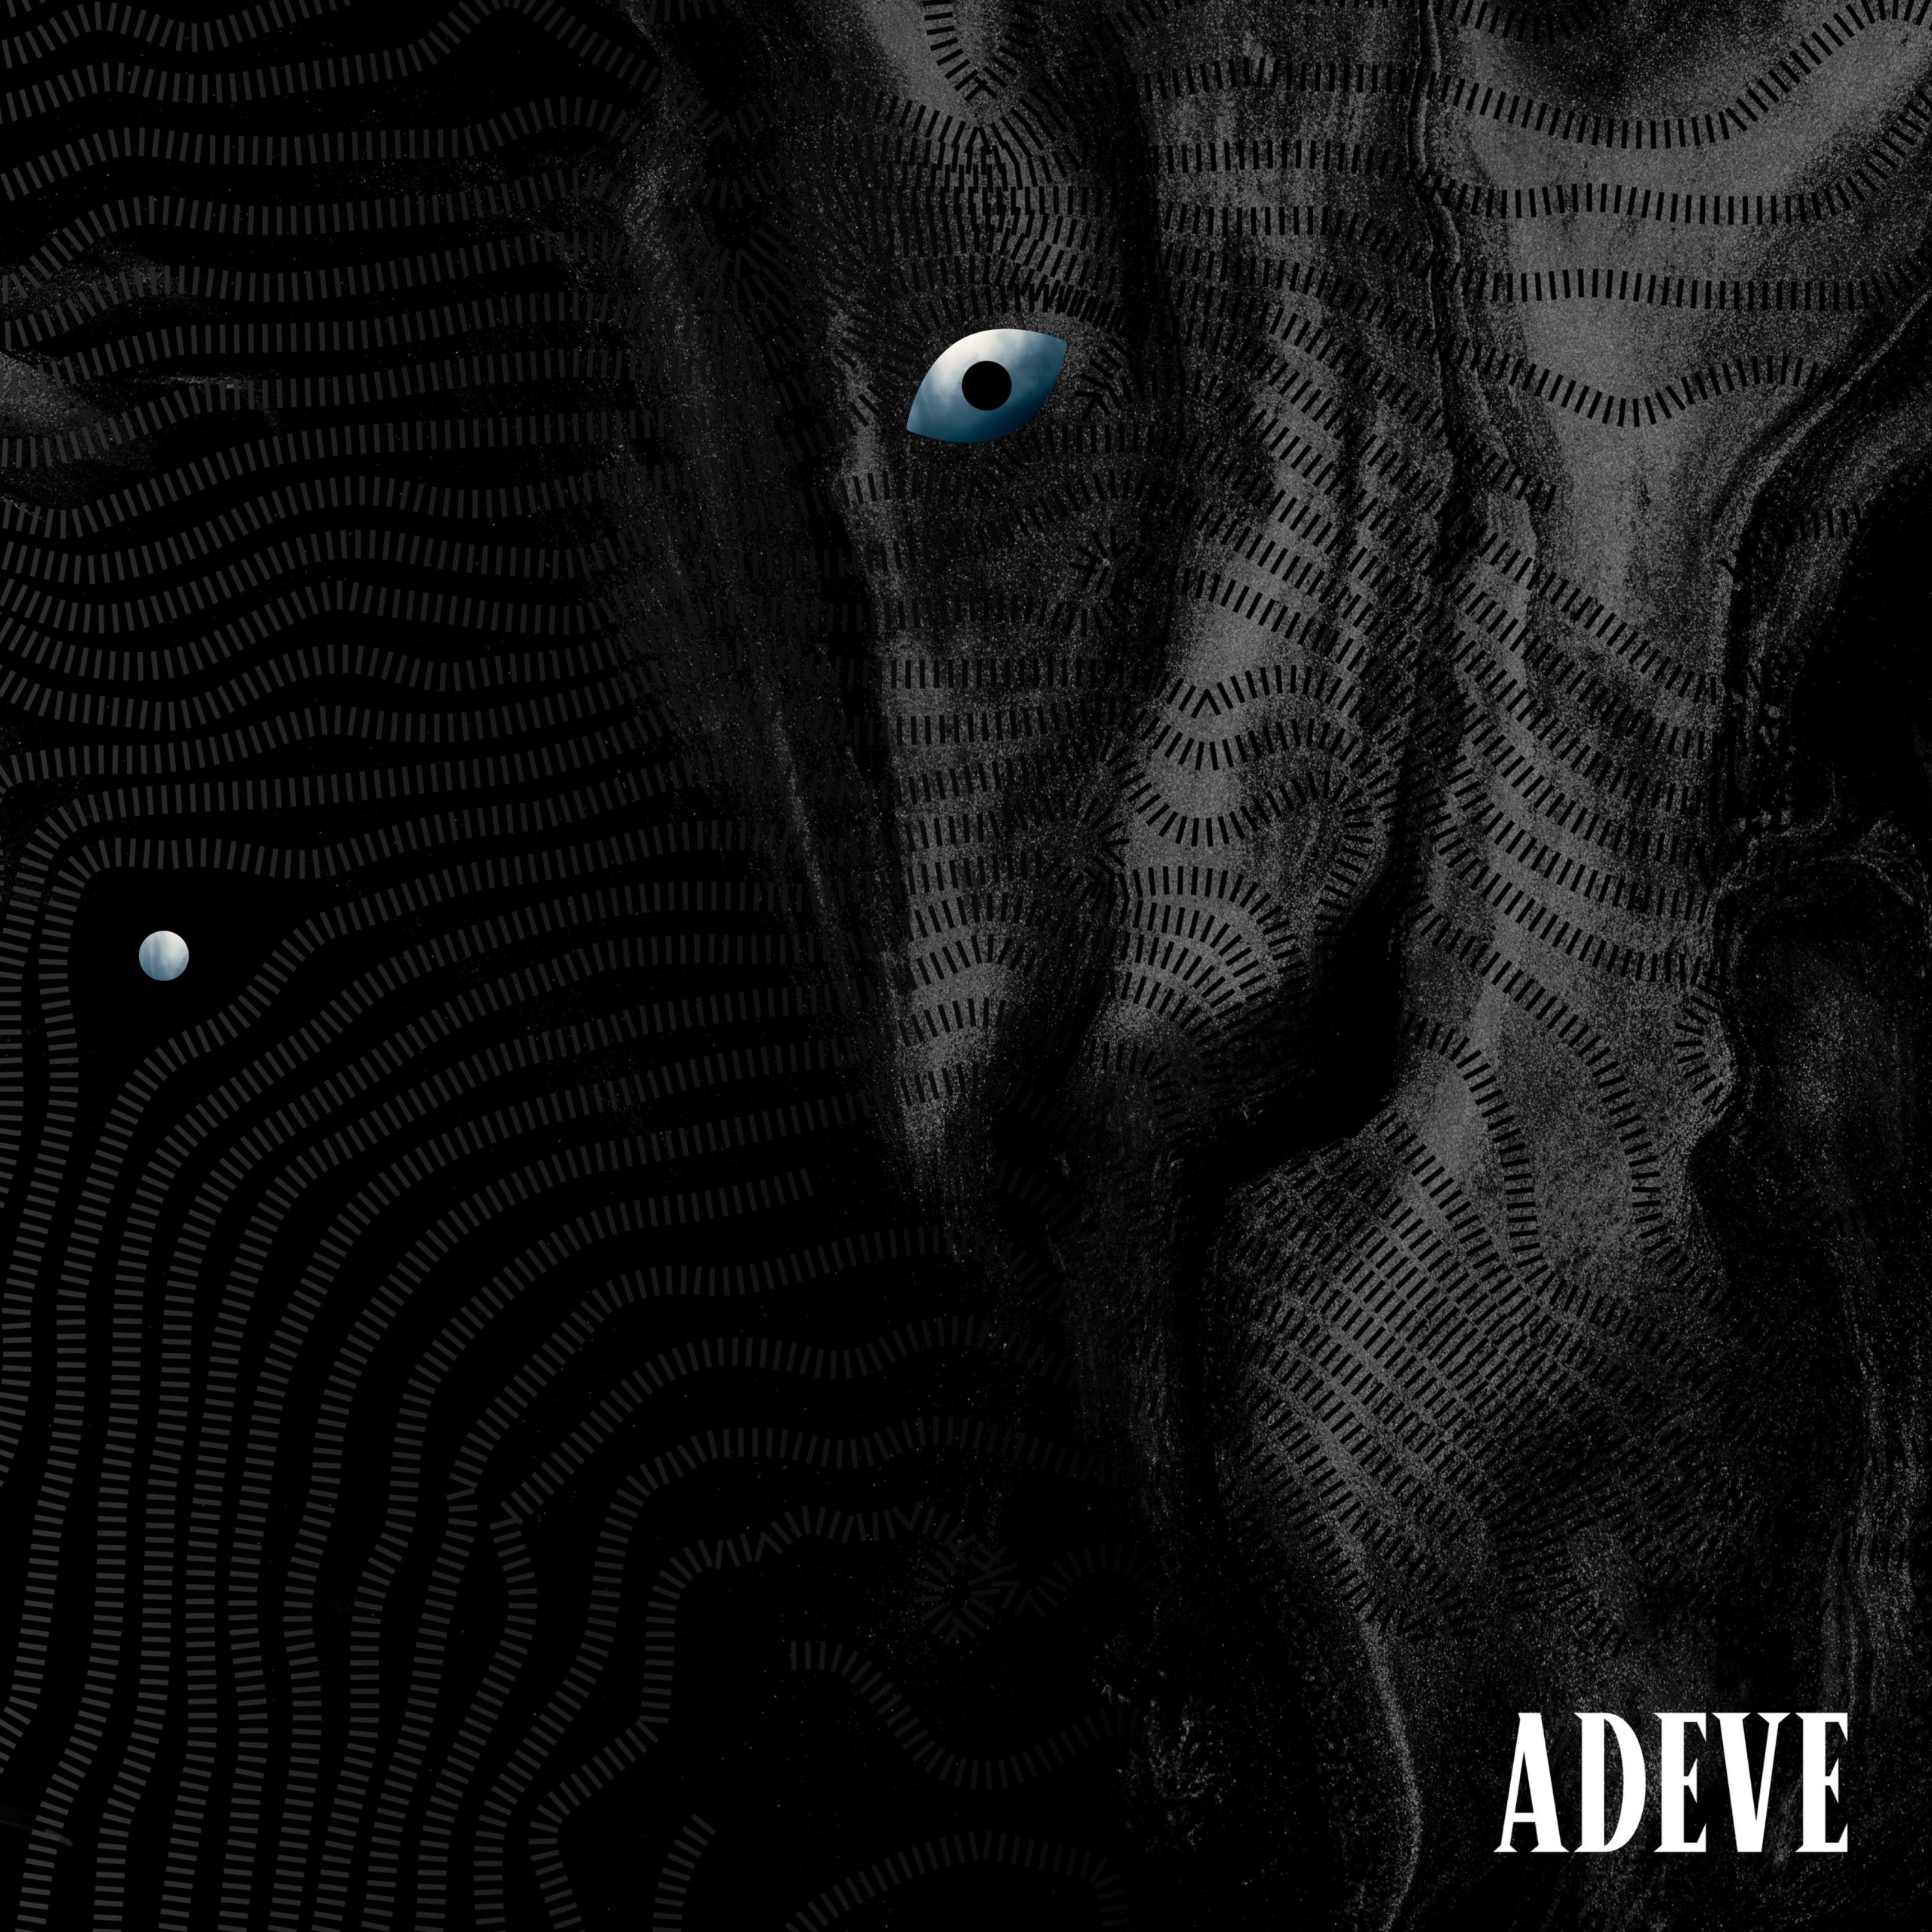 Nin3s sorprende y encanta con 'Adeve', su segundo single COVER ADEVE NIN3S scaled